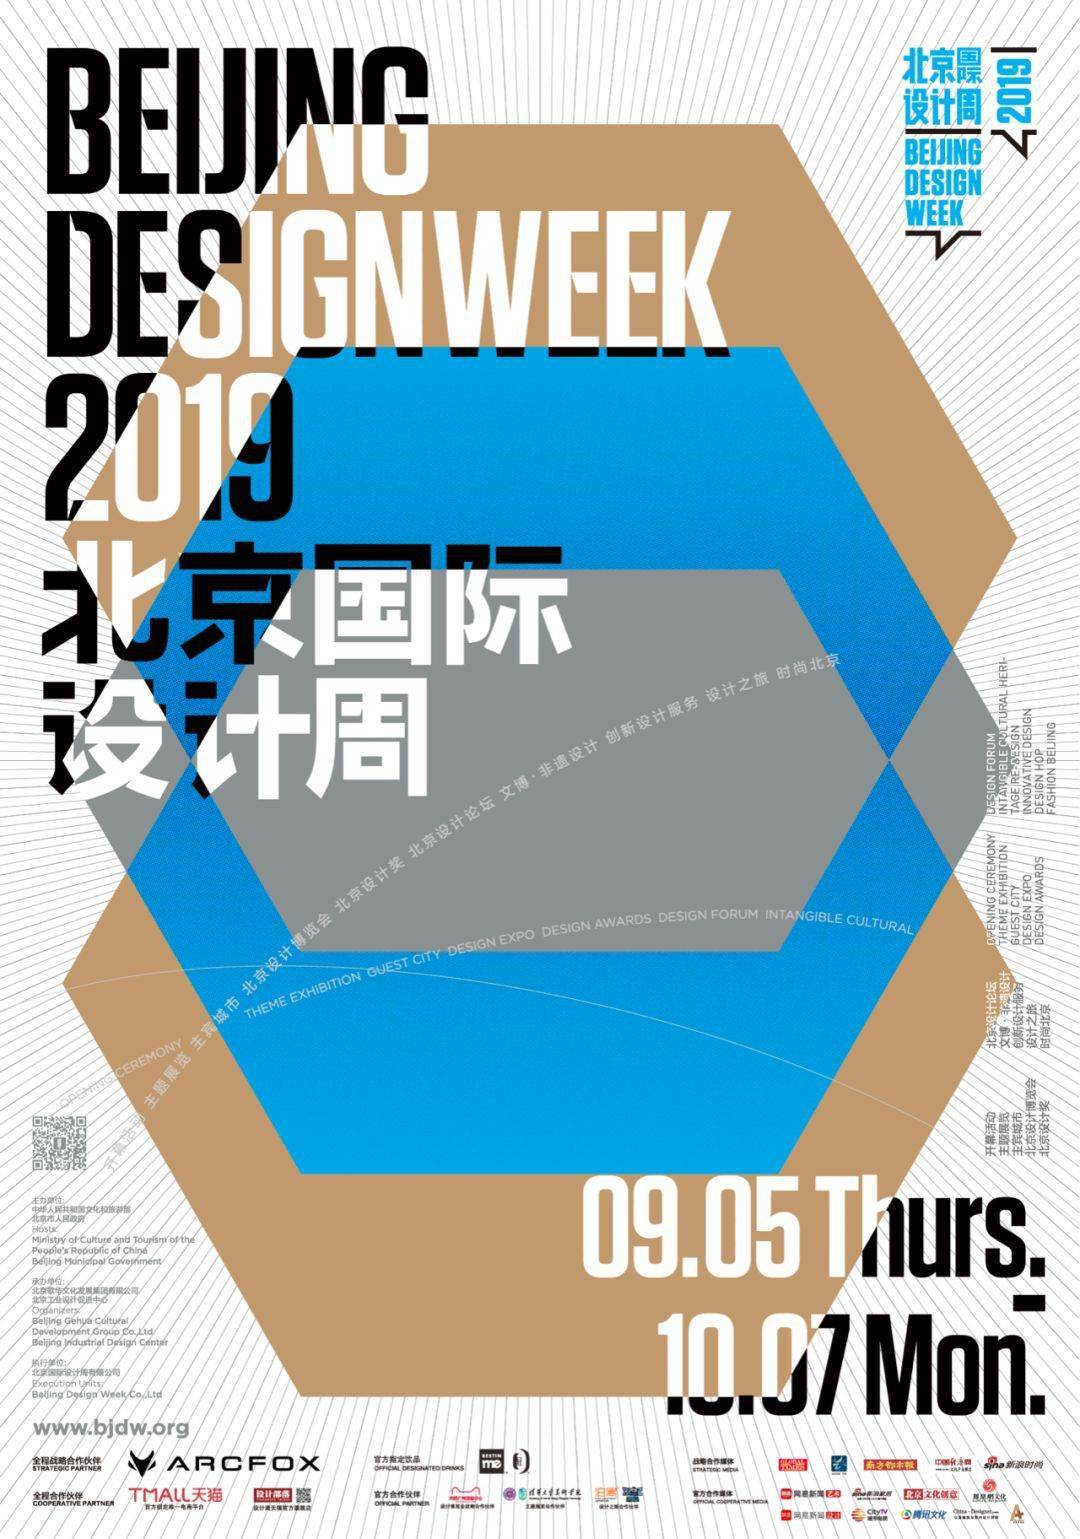 来自will的2019北京国际设计周官方海报